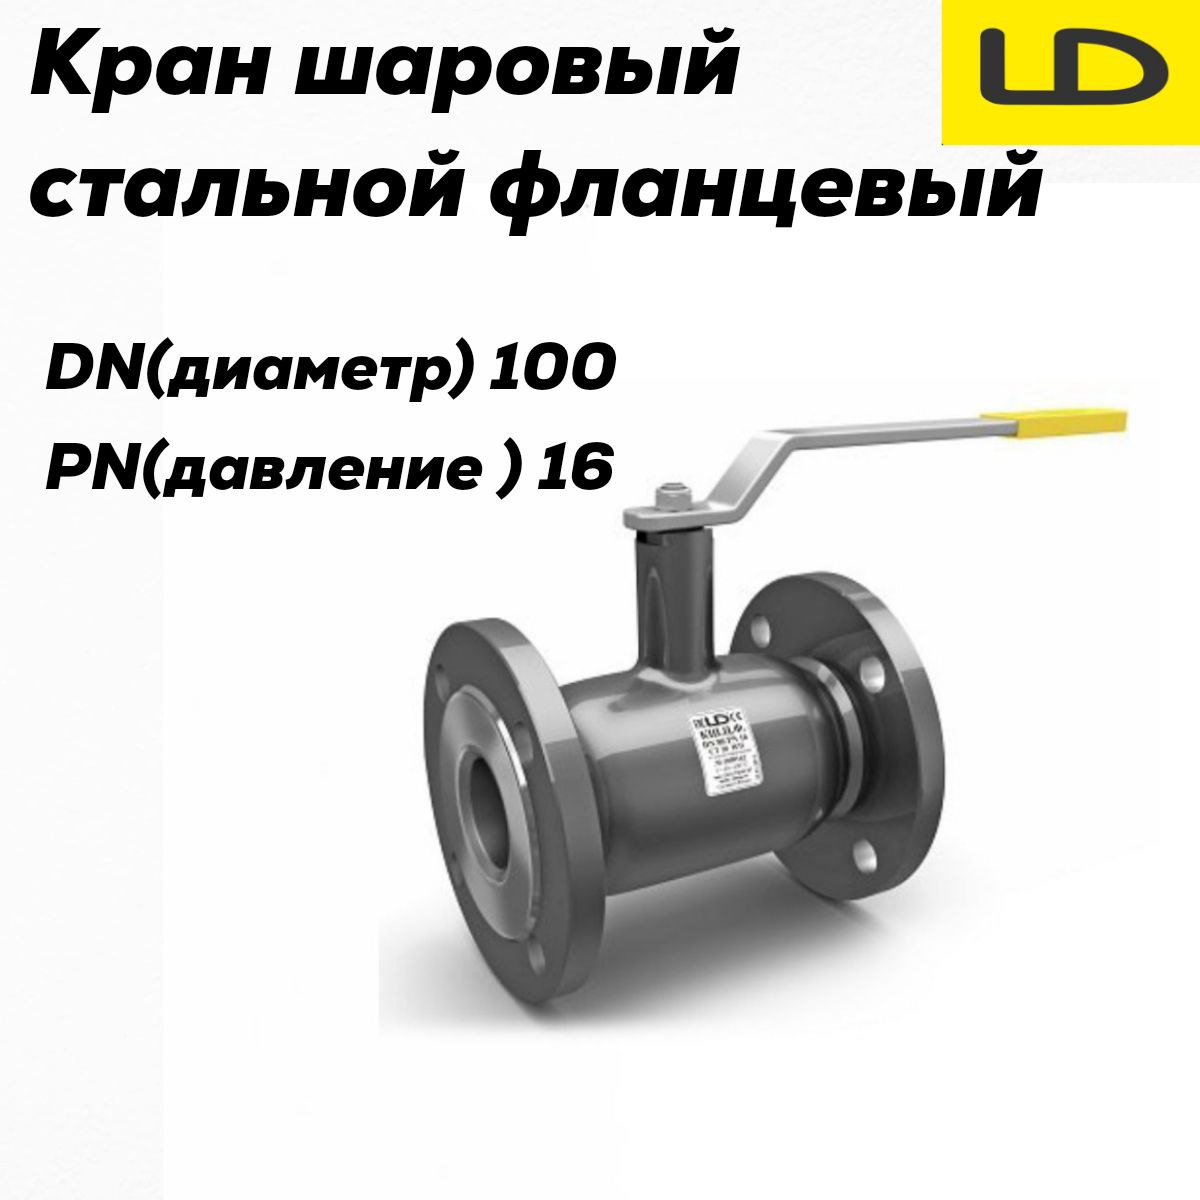 Кран шаровой стальной фланцевый КШЦФ DN 100 PN16 стандарт